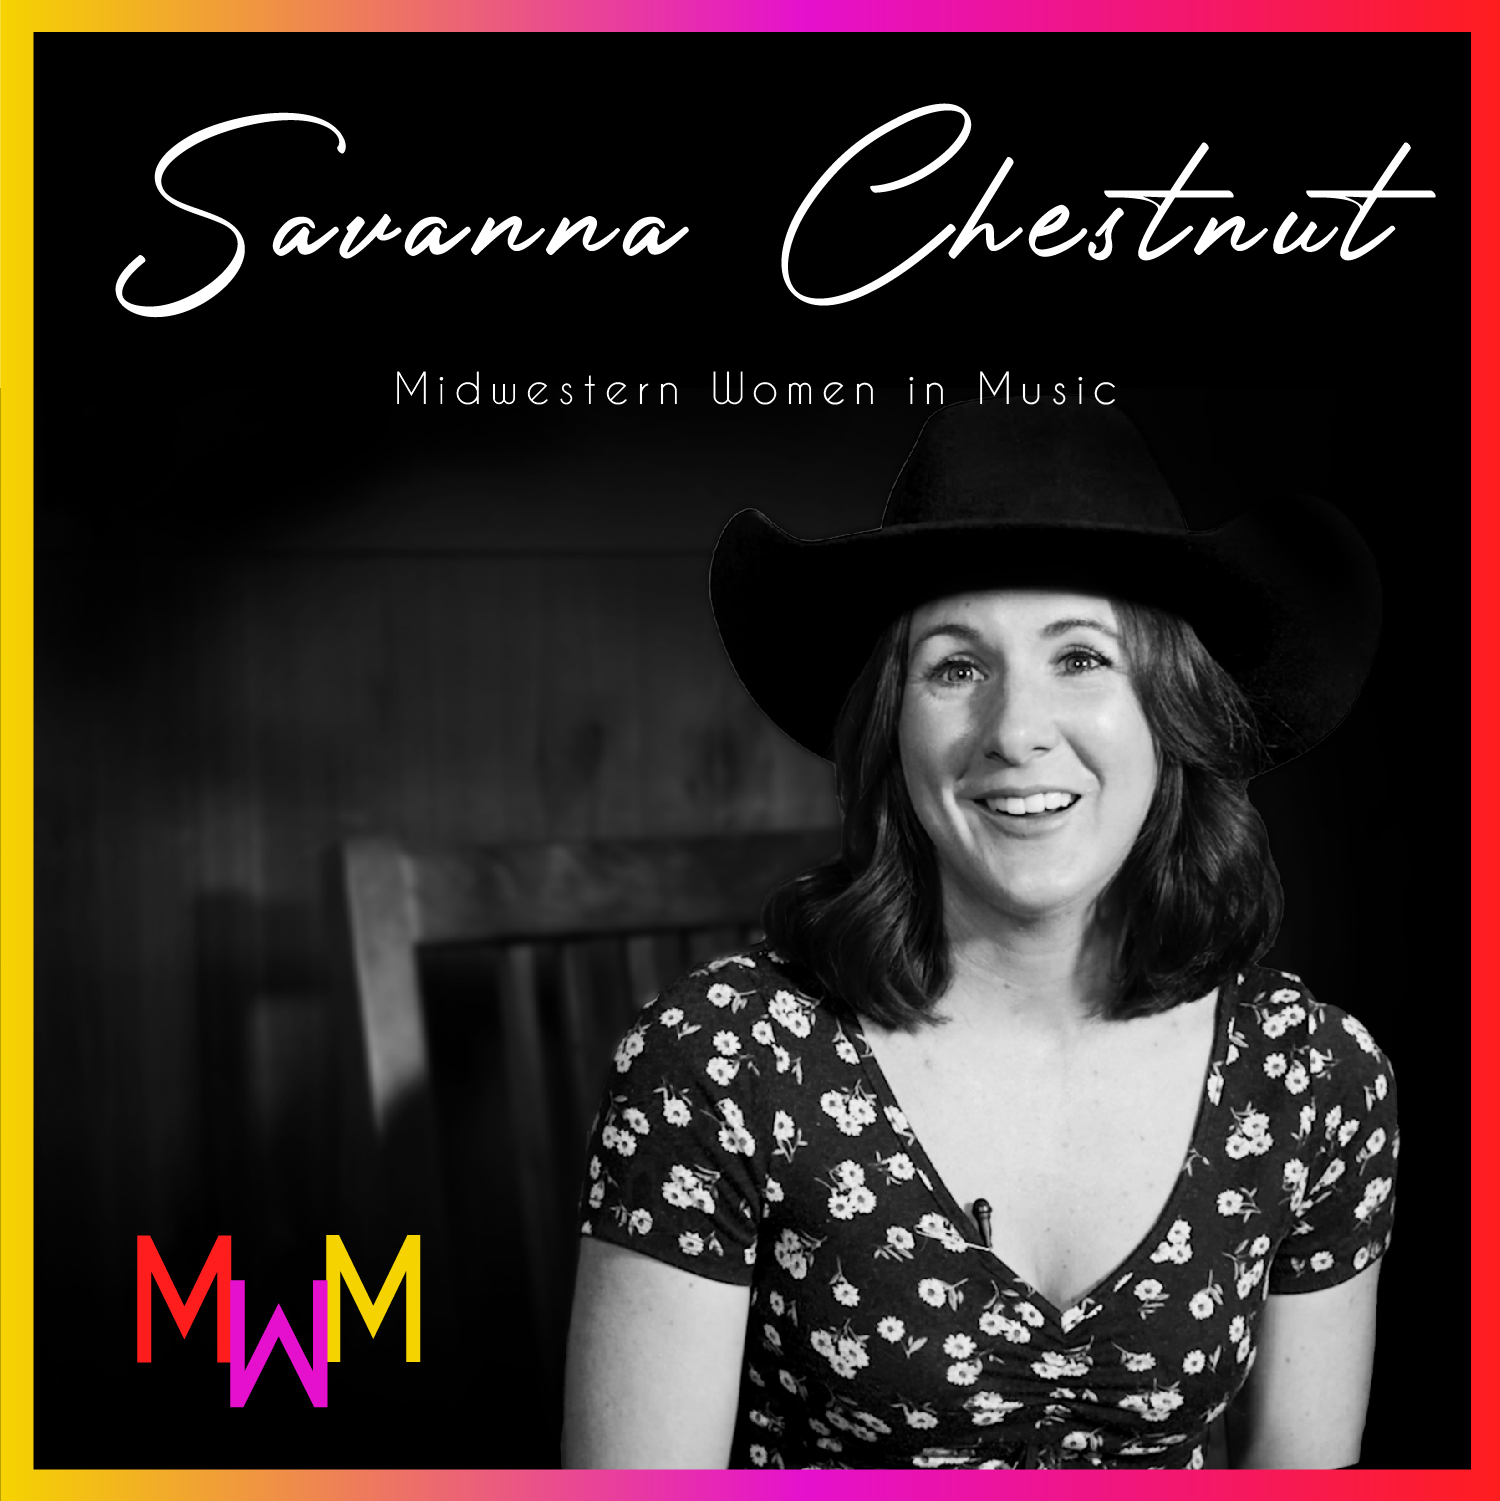 Midwestern Women in Music: Savanna Chestnut